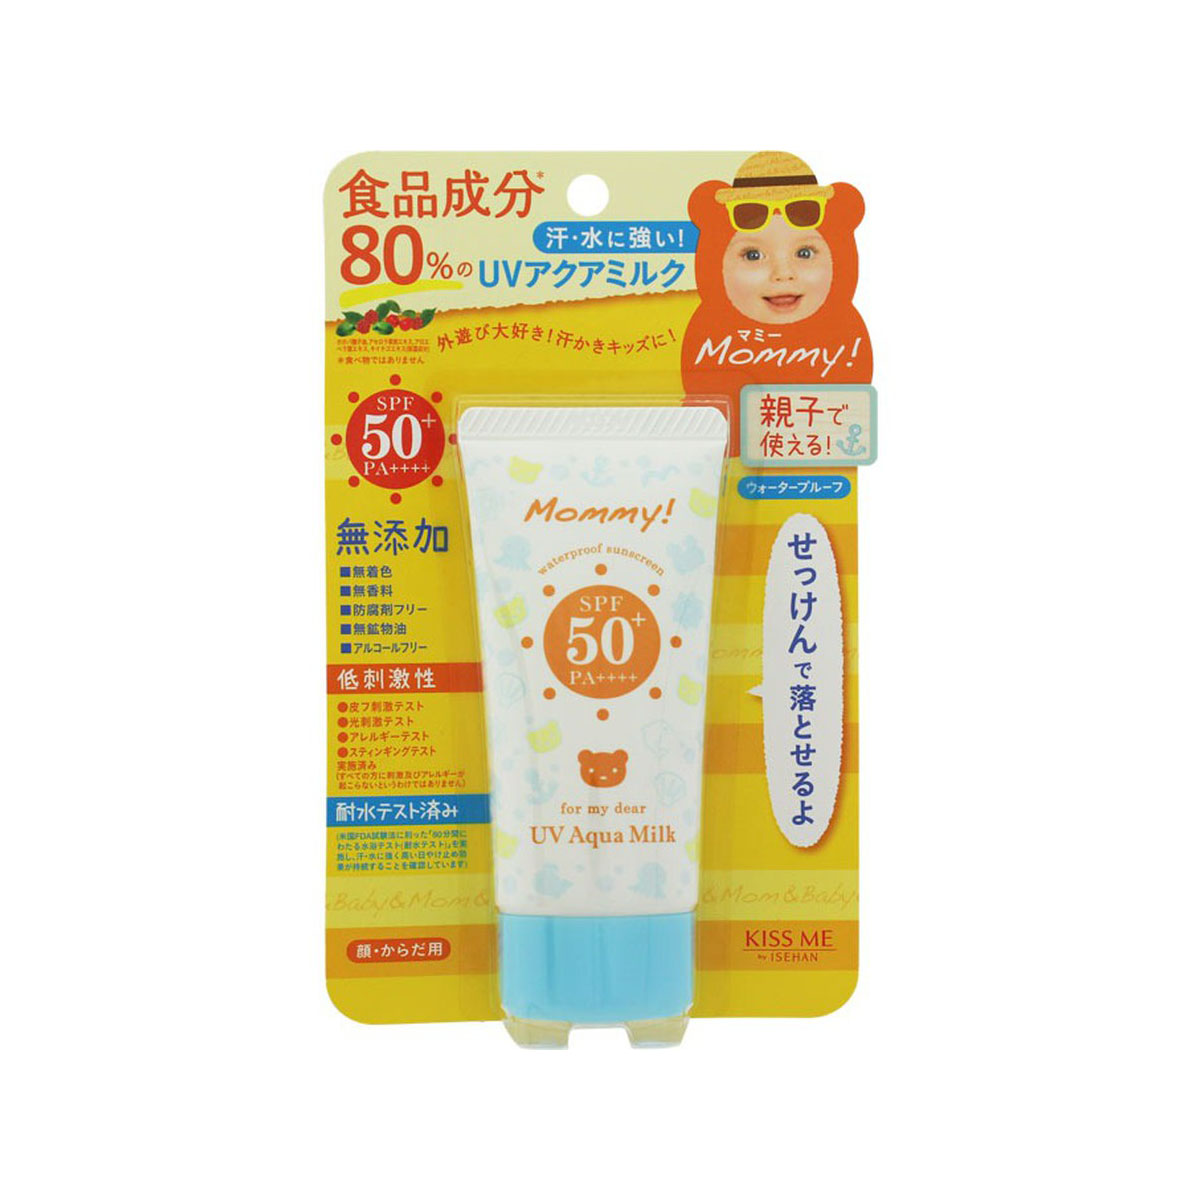 Kem Chống Nắng Mommy UV Aqua Milk SPF 50+ Cho Bé 50g